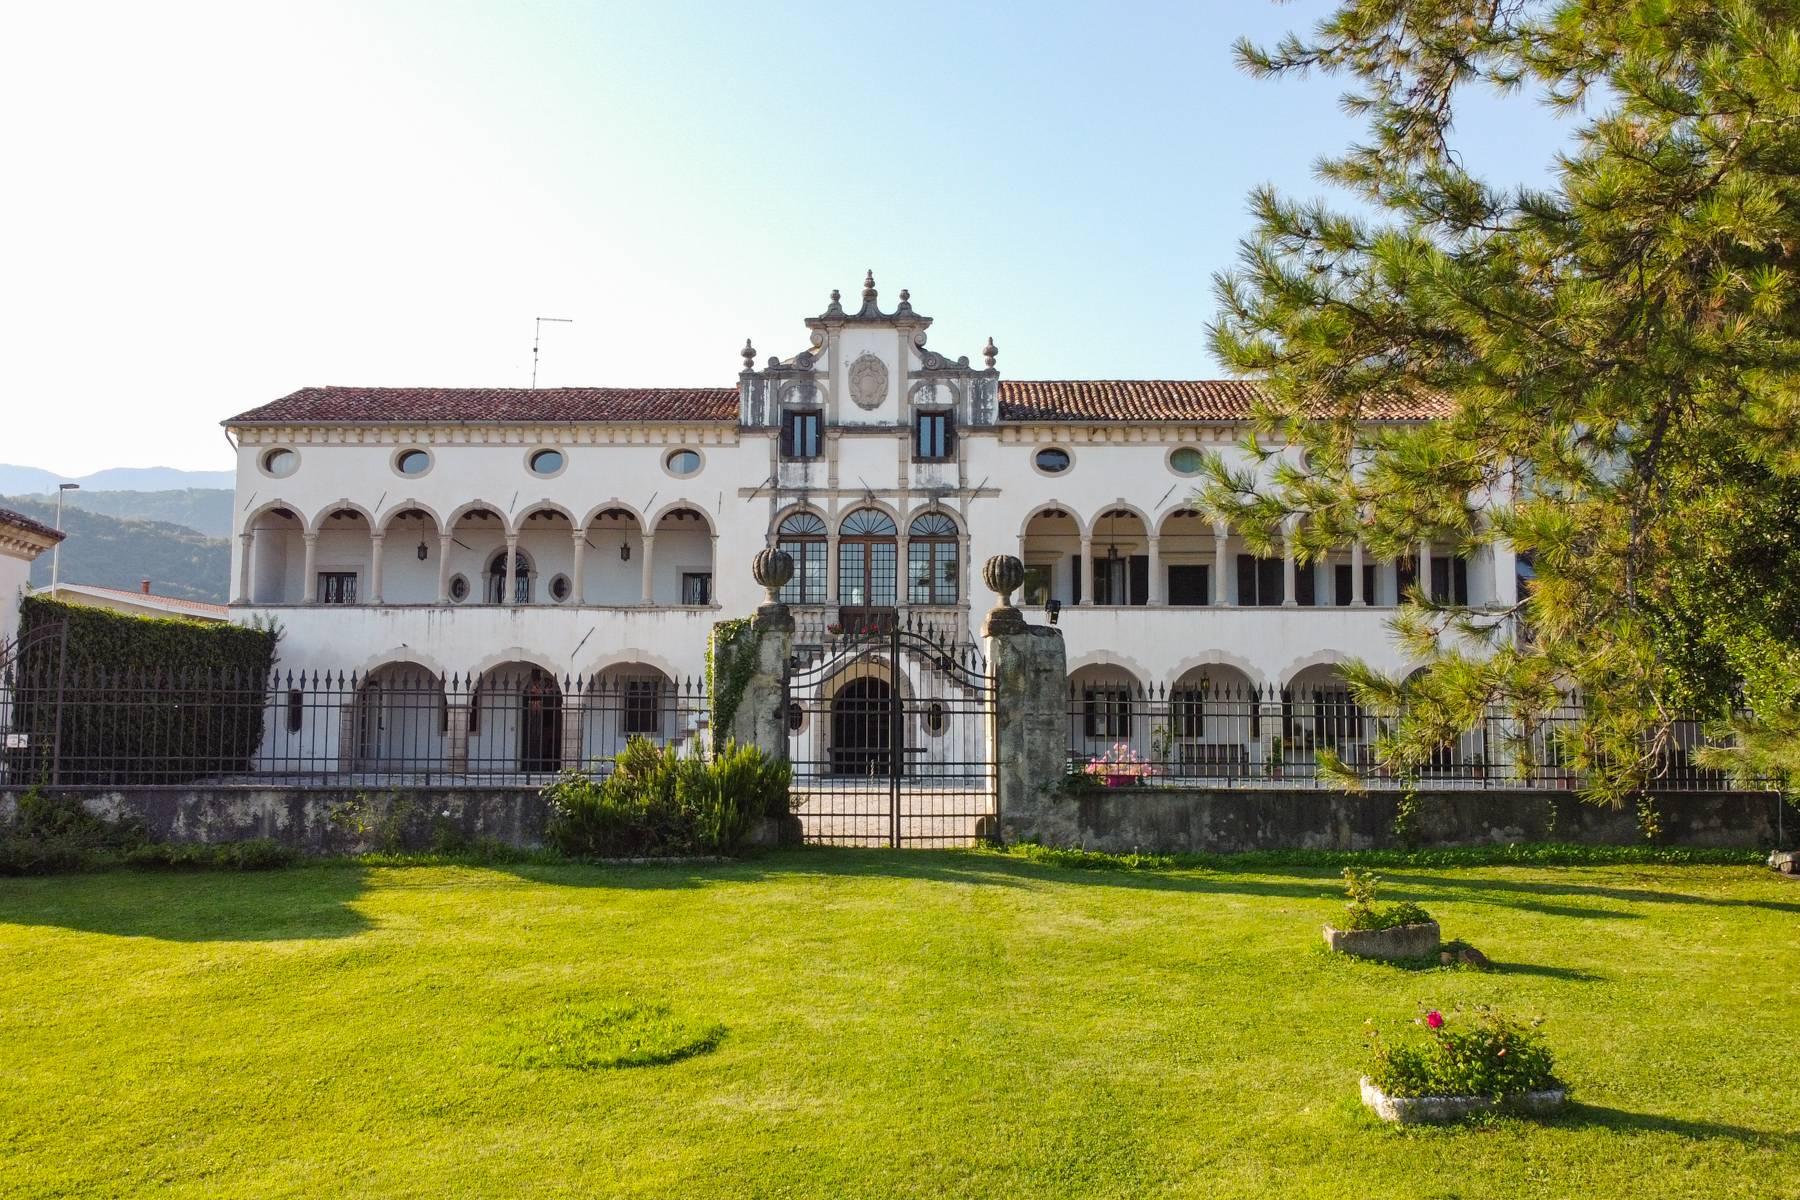 Elégante villa vénitienne du XVII siècle avec parc sul les collines de Trévise - 1